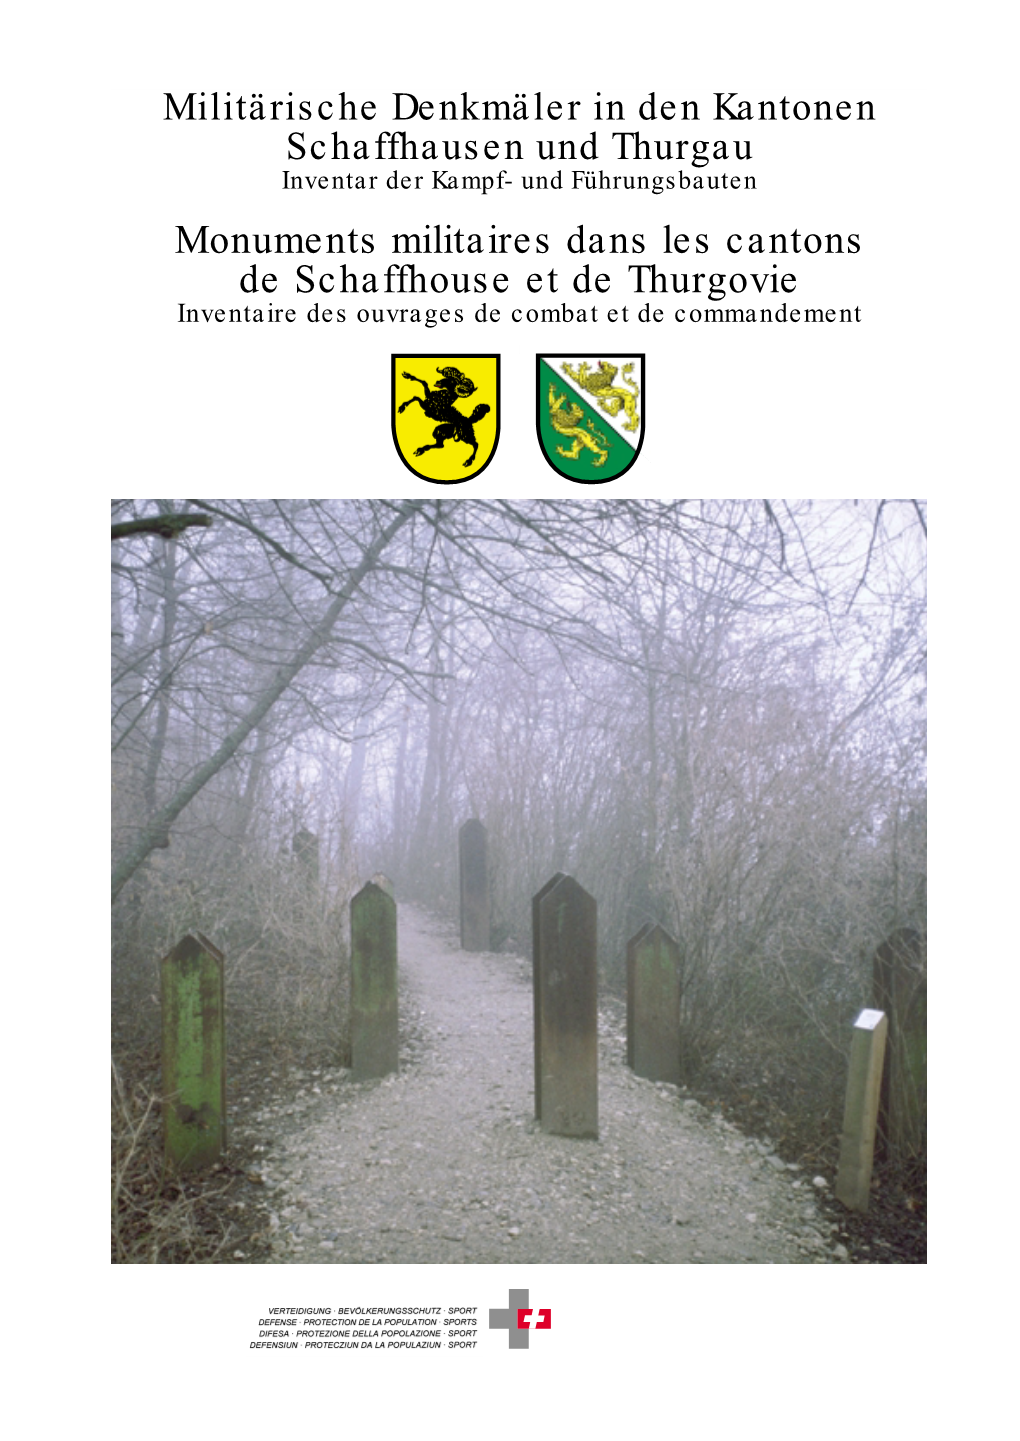 Monuments Militaires Dans Les Cantons De Schaffhouse Et De Thurgovie